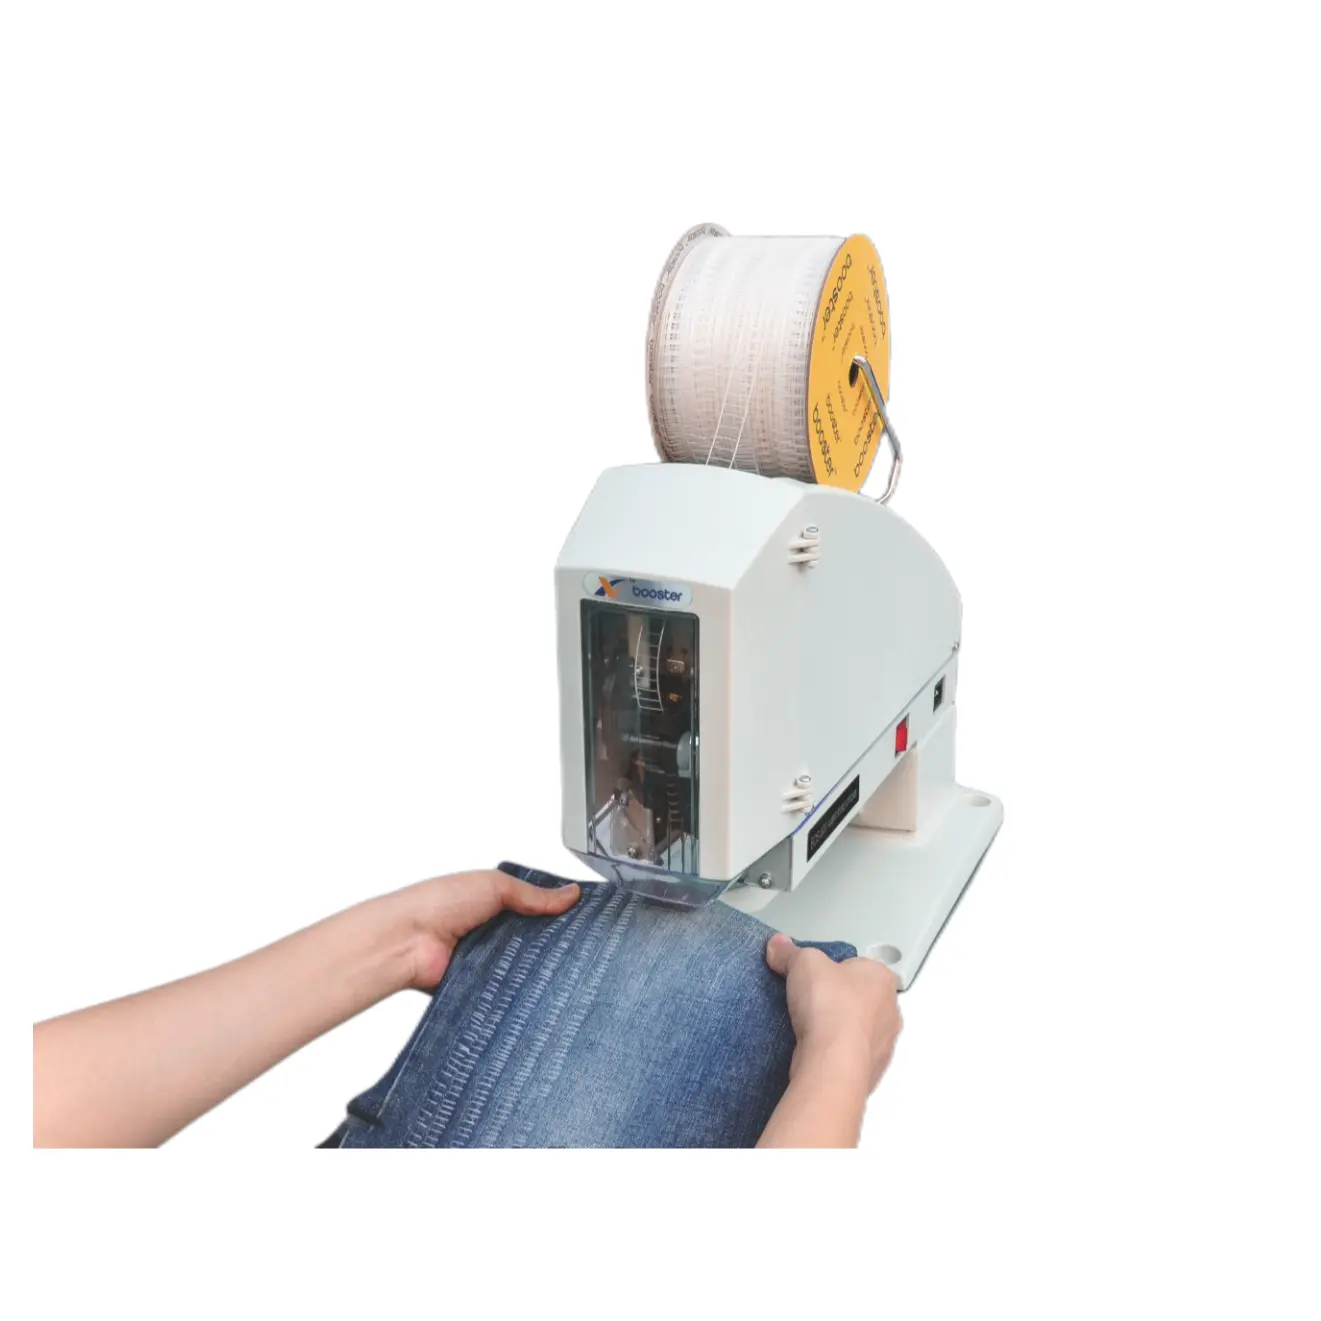 Booster OEM plástico grampo máquina automática nome etiqueta cartão tag arma máquina para roupas toalhas meias jeans pendurar rótulos